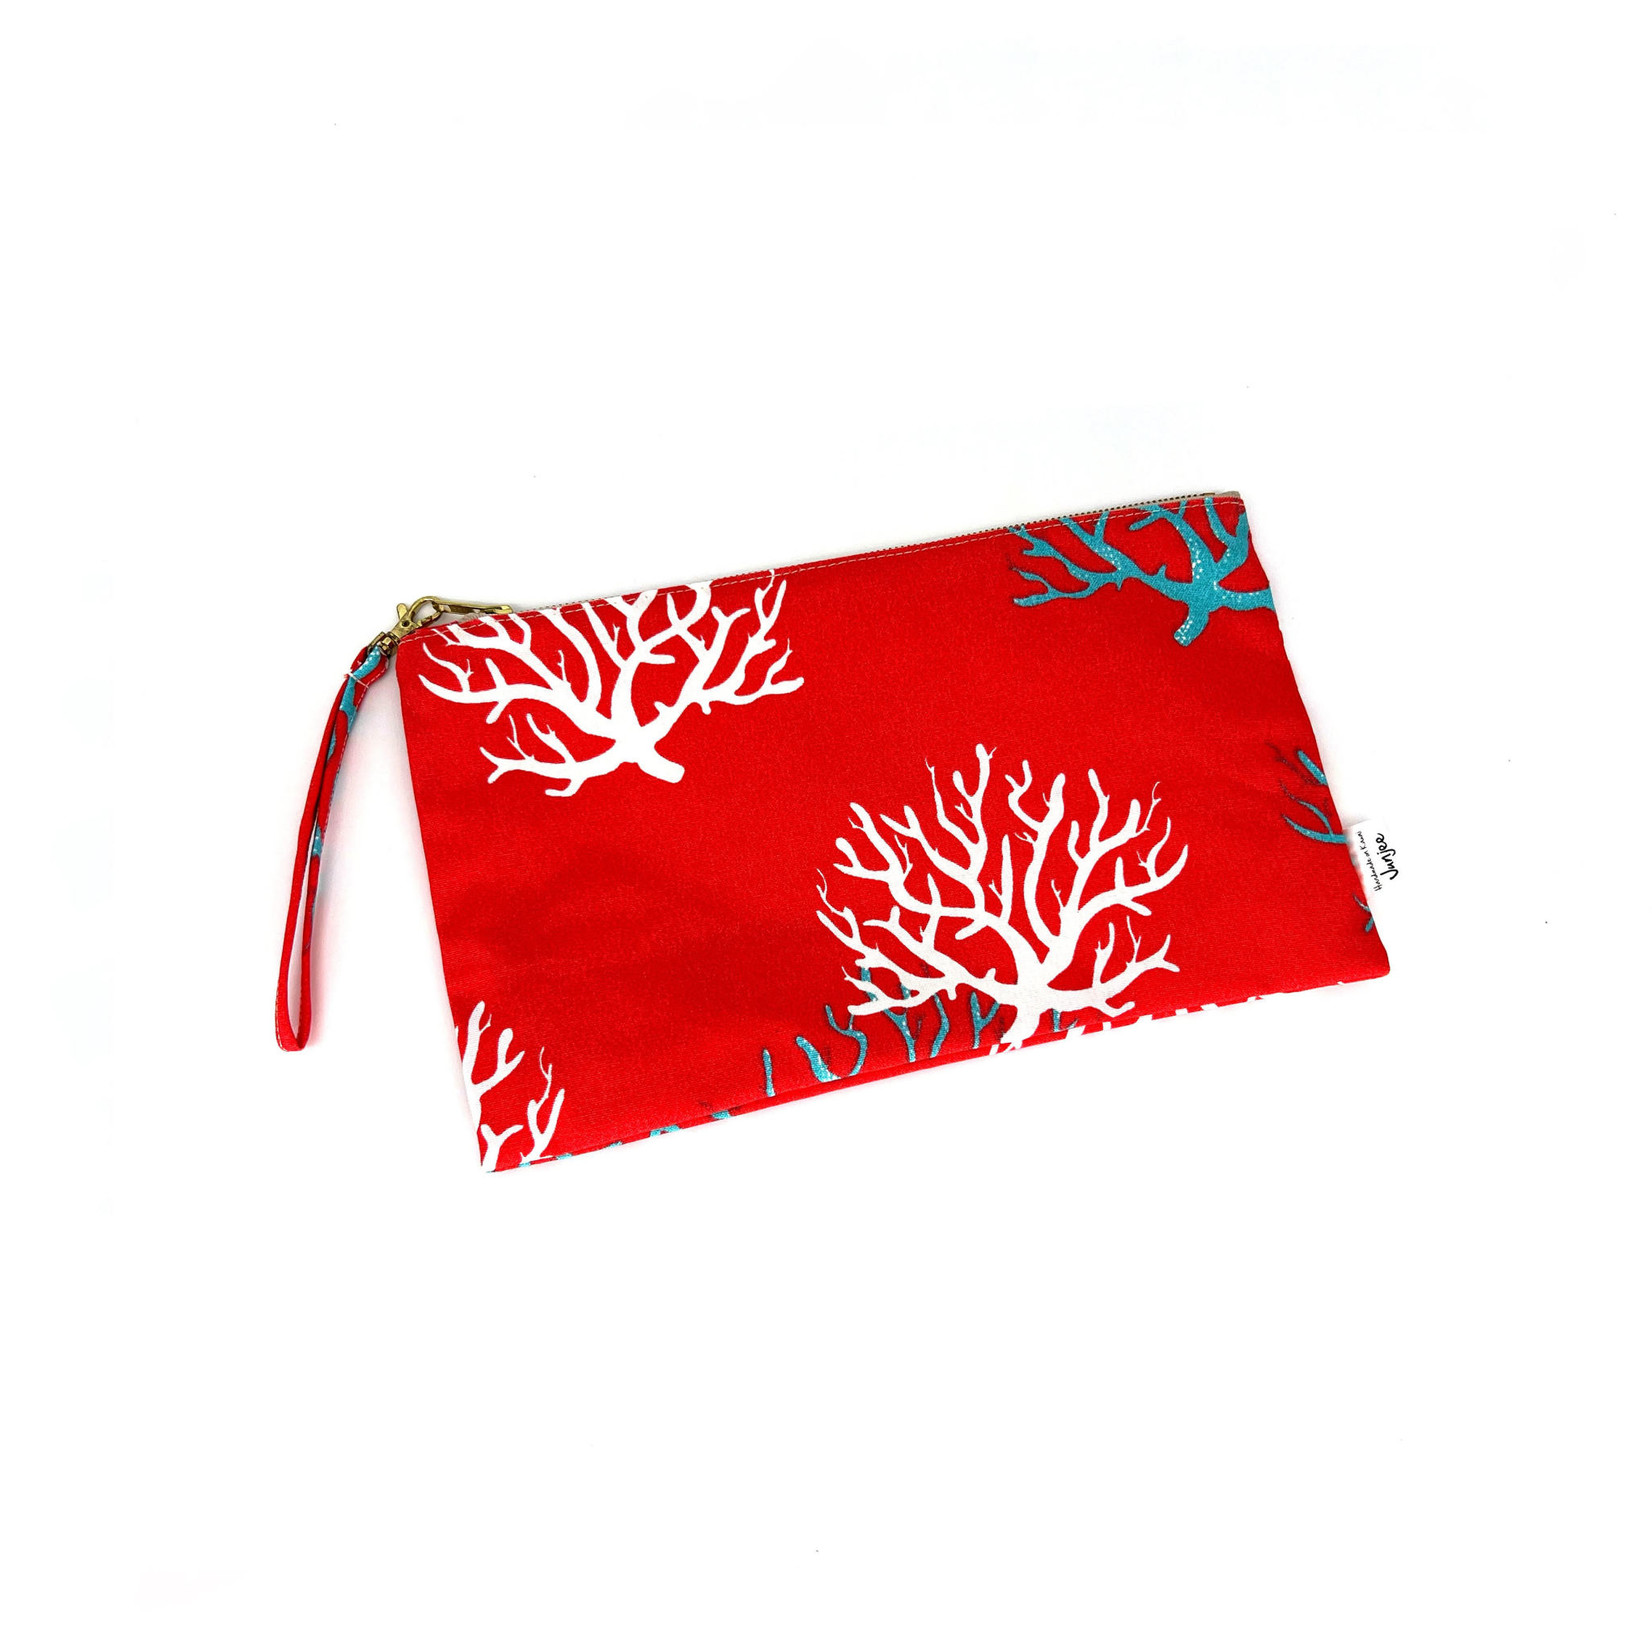 Junjee Handmade Clutch Bag Crimson